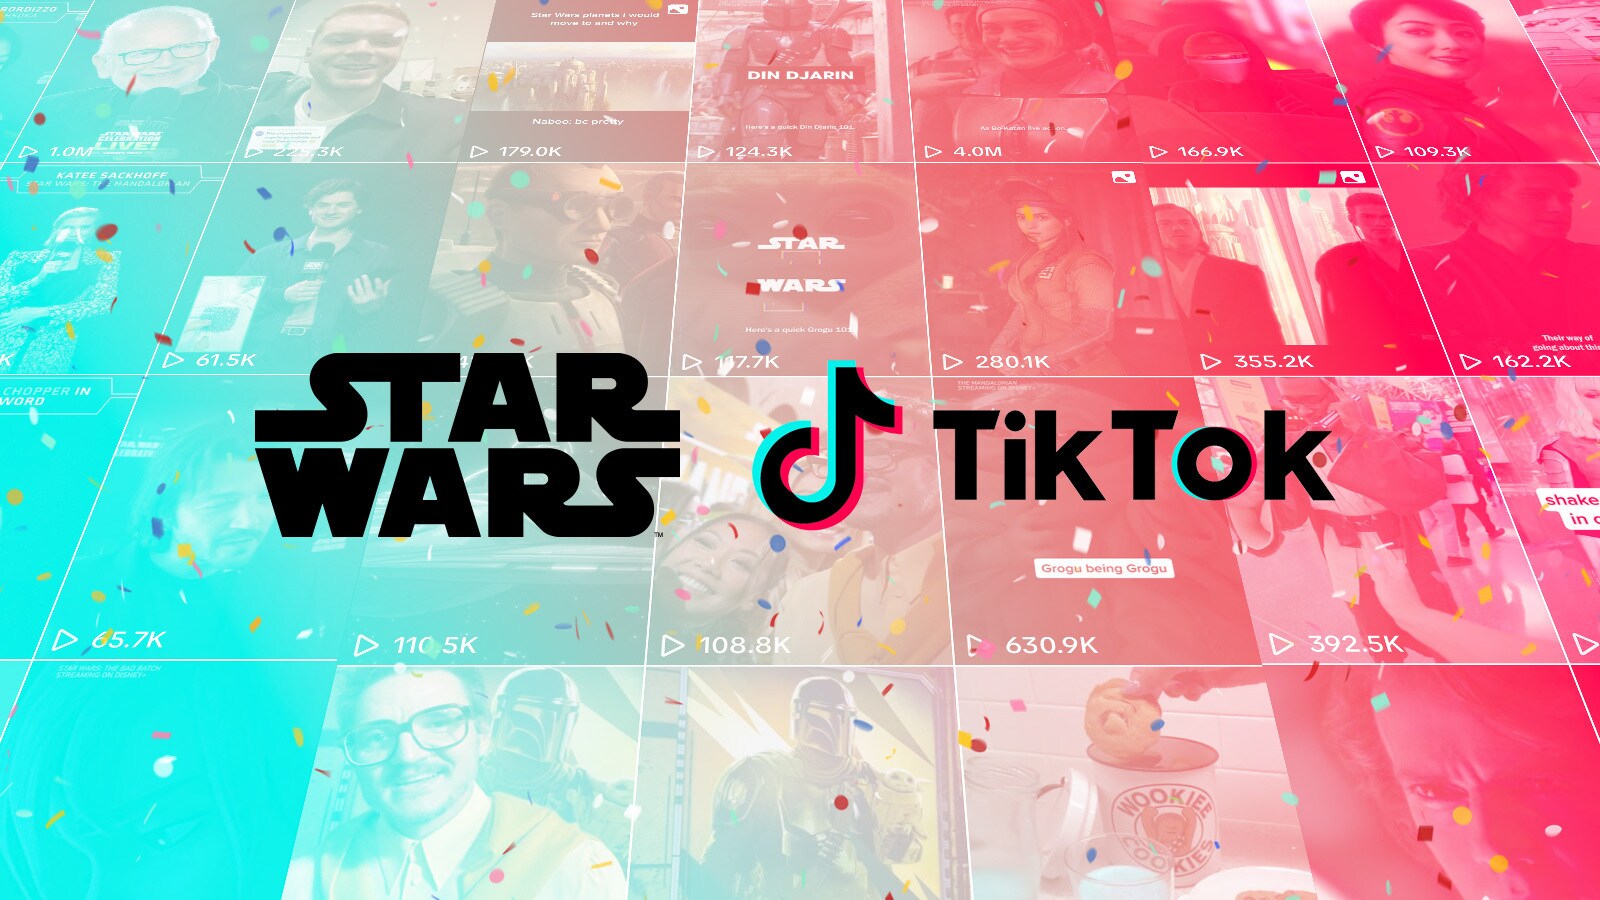 Star Wars TikTok Turns 1 Today